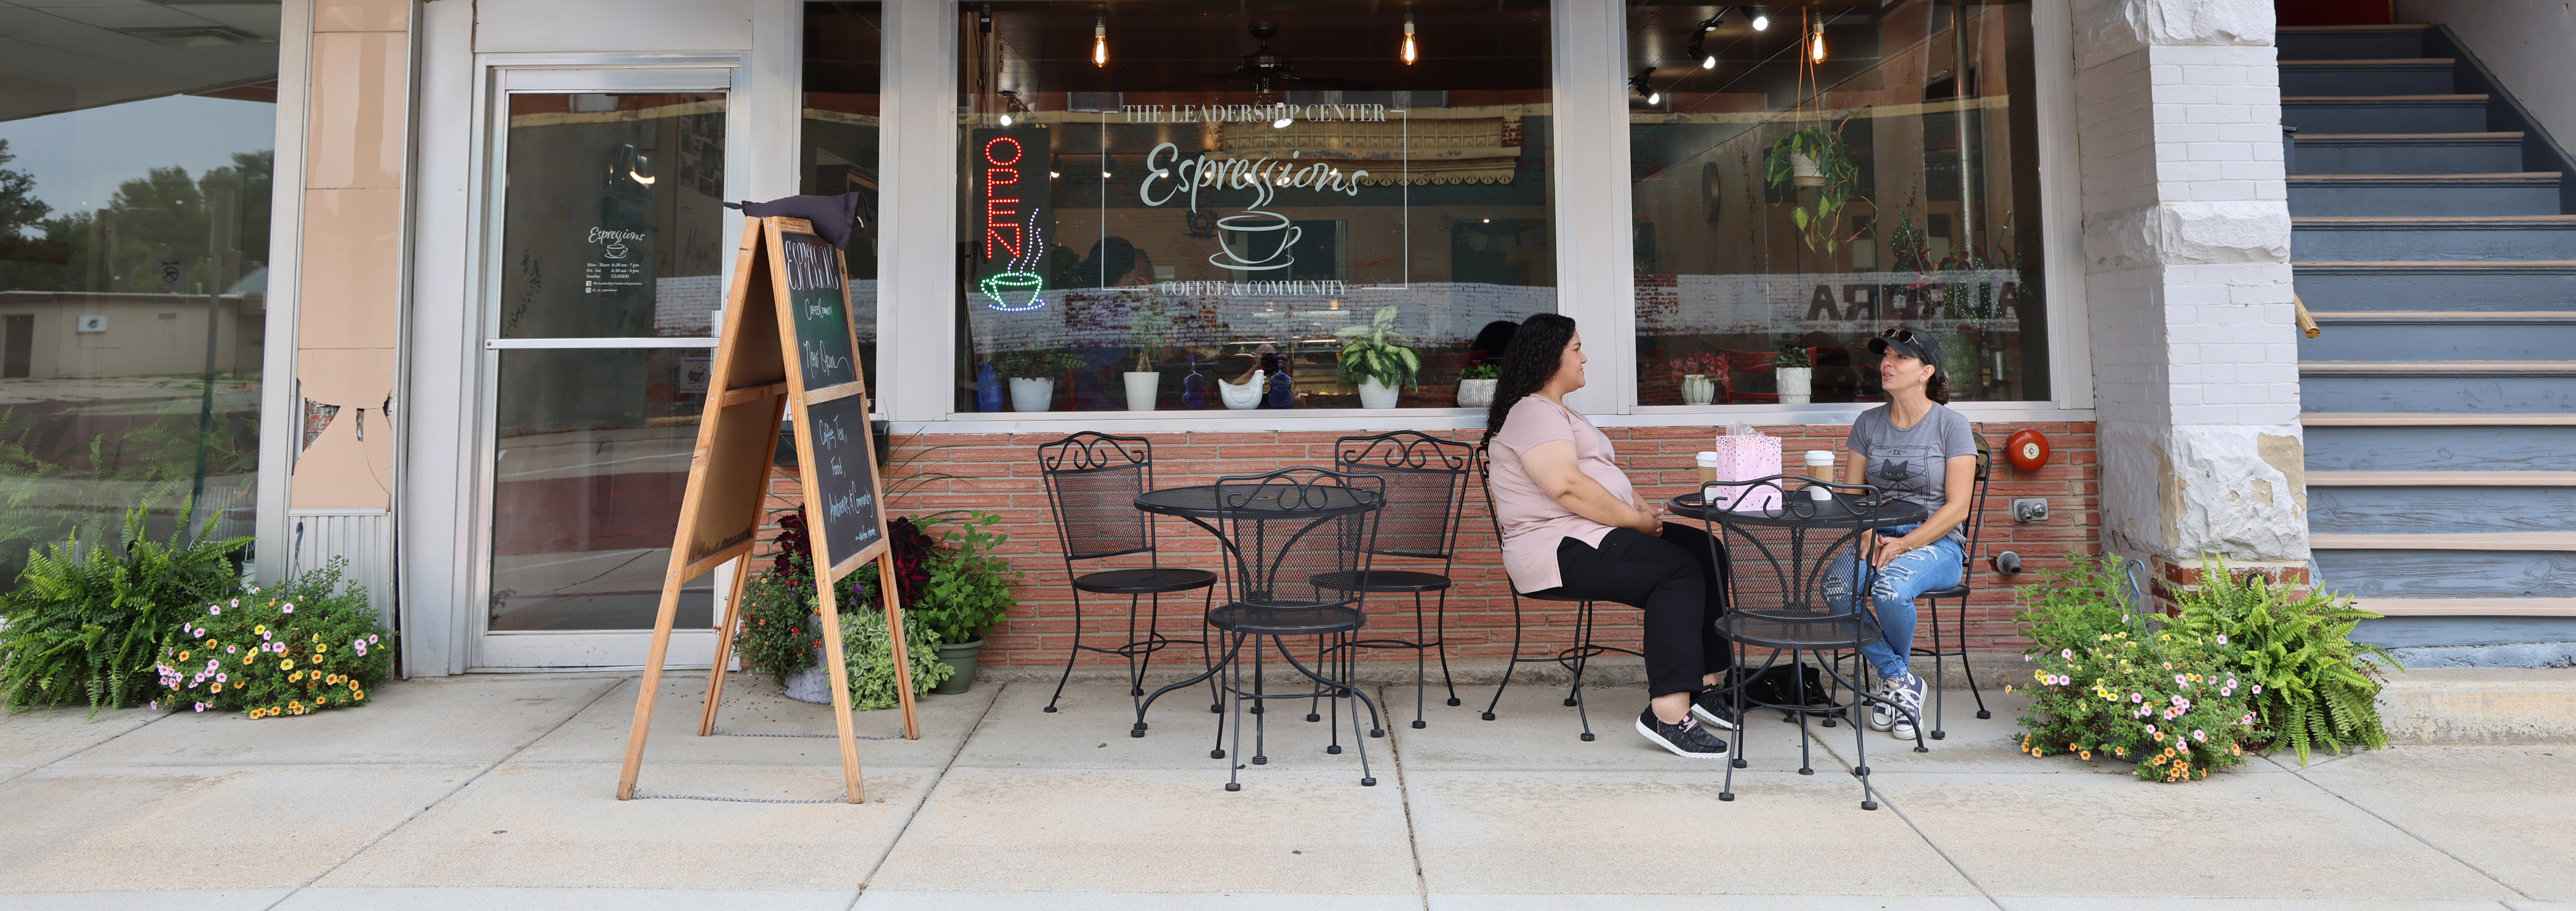 Two women sit outside a coffee shop in Aurora, Neb.